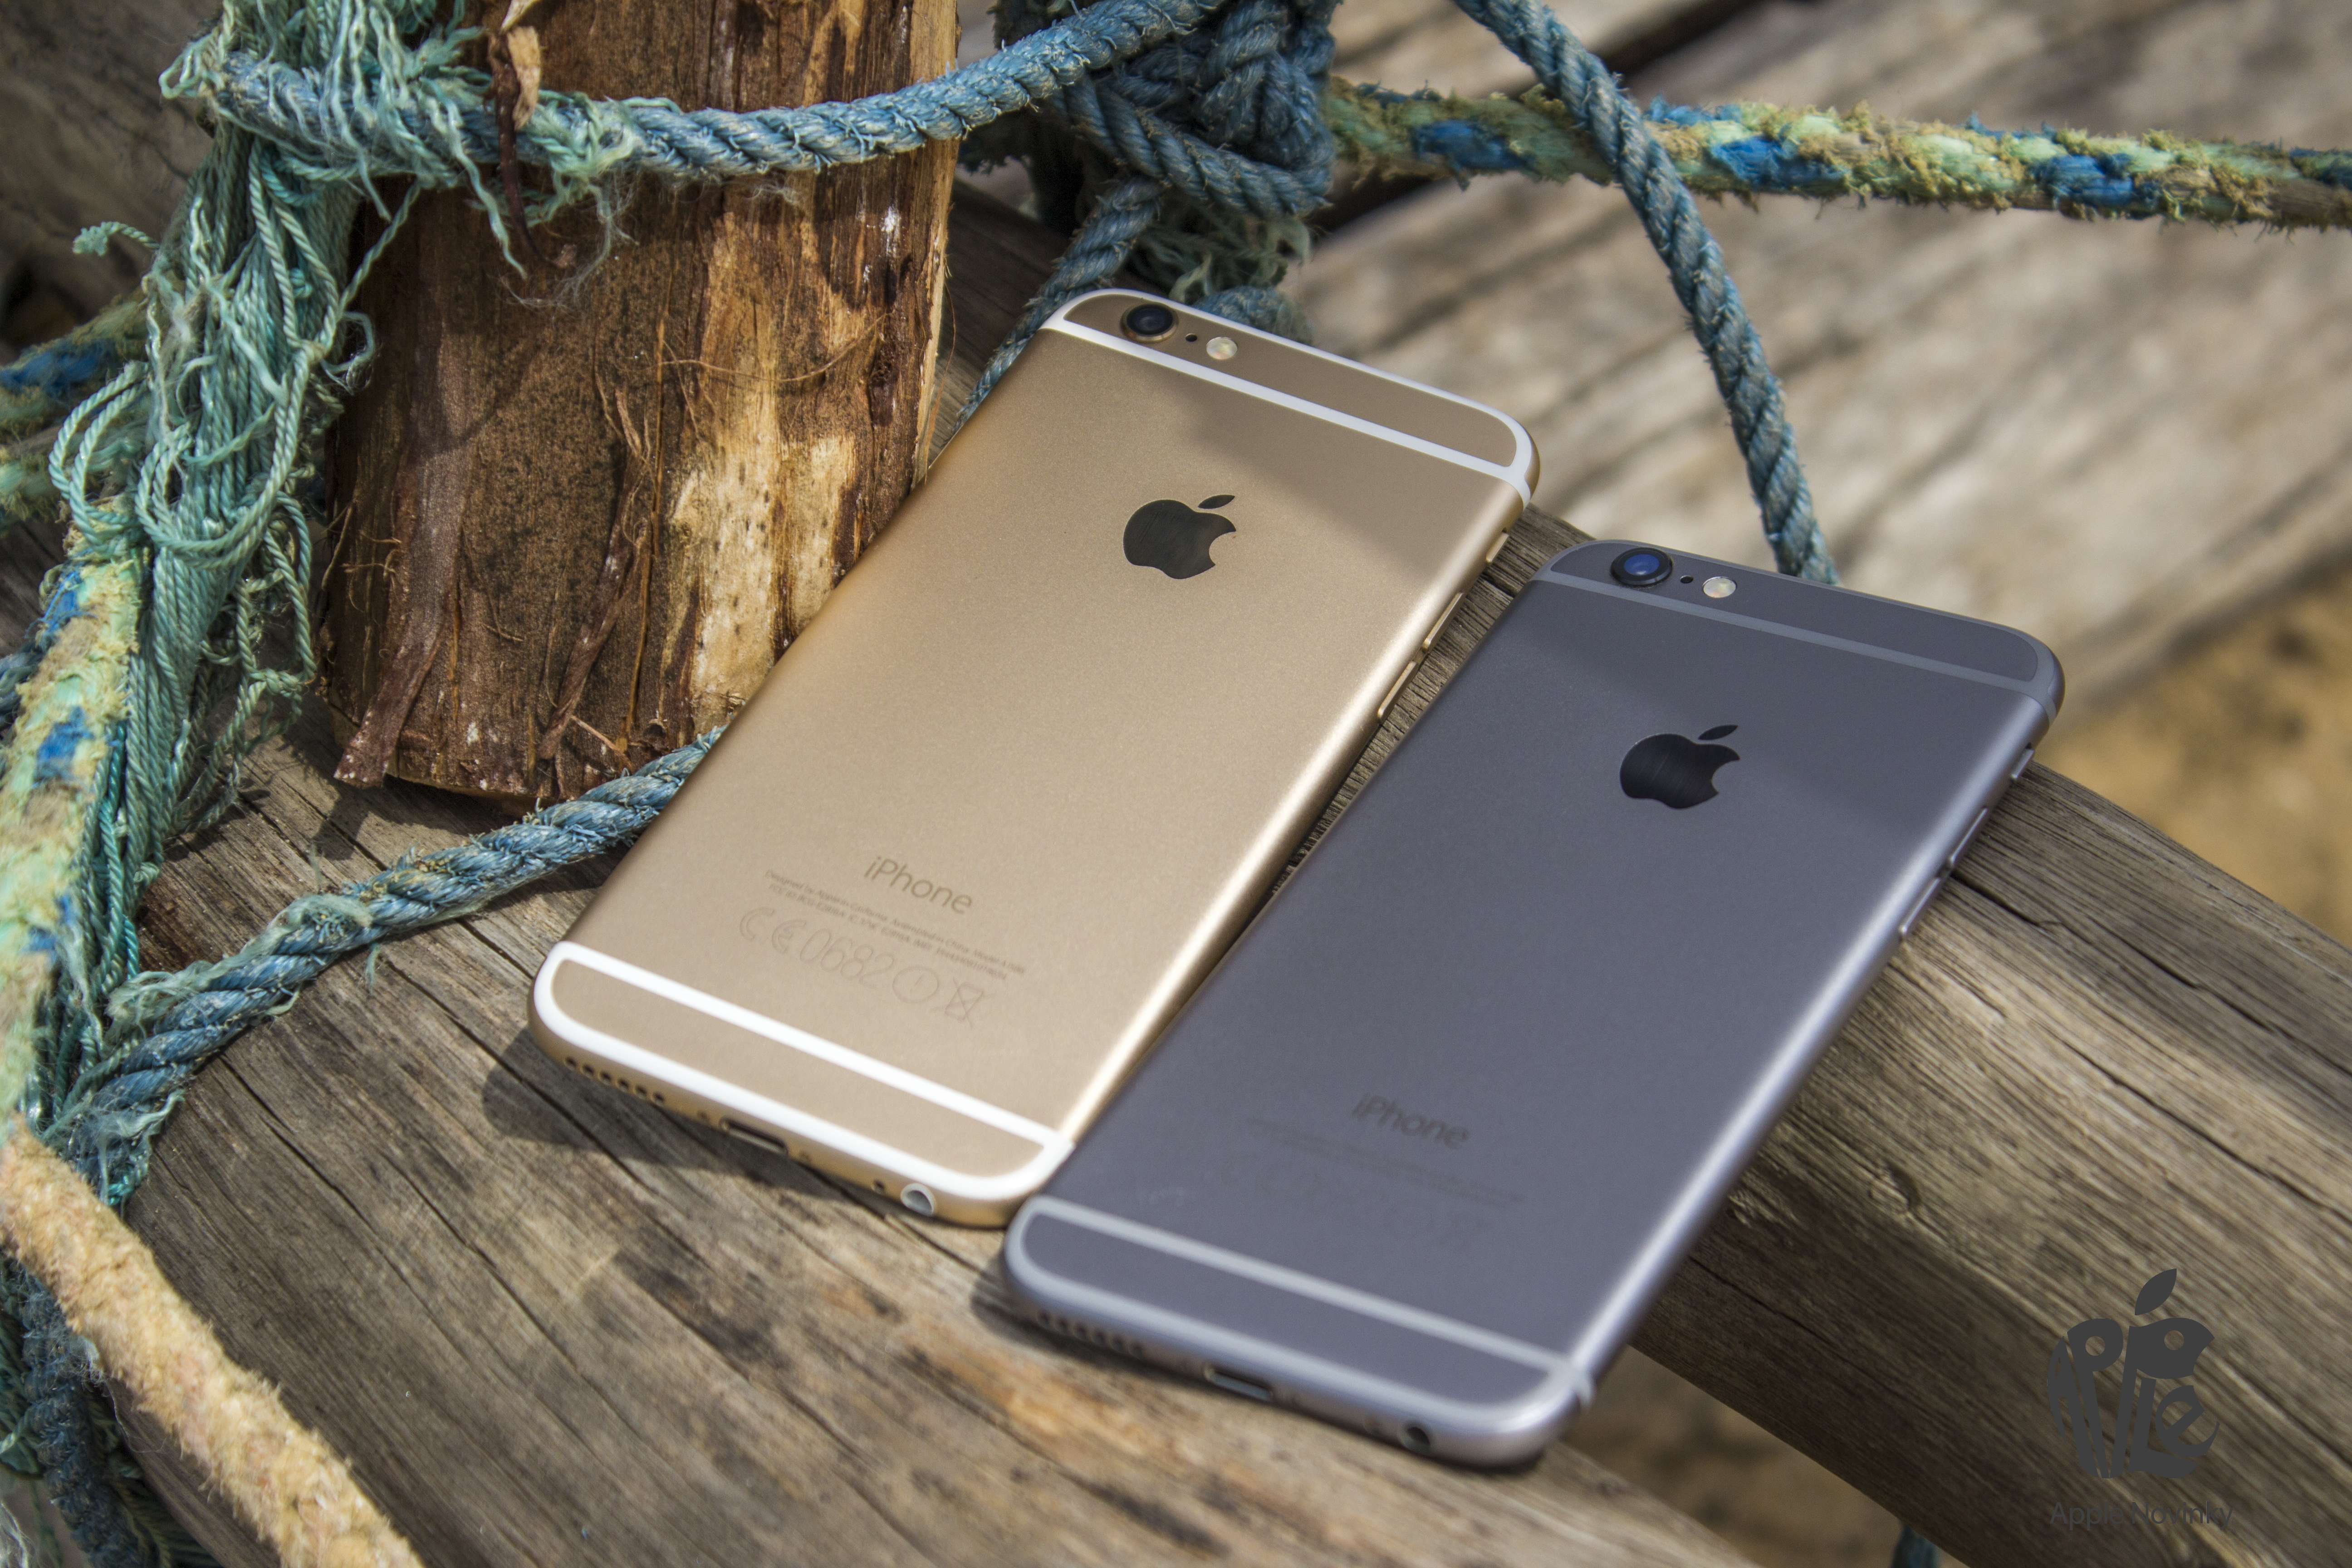 AppleNovinky promo fotky sri srí lanka iPhone 6 Plus space grey gold 2015